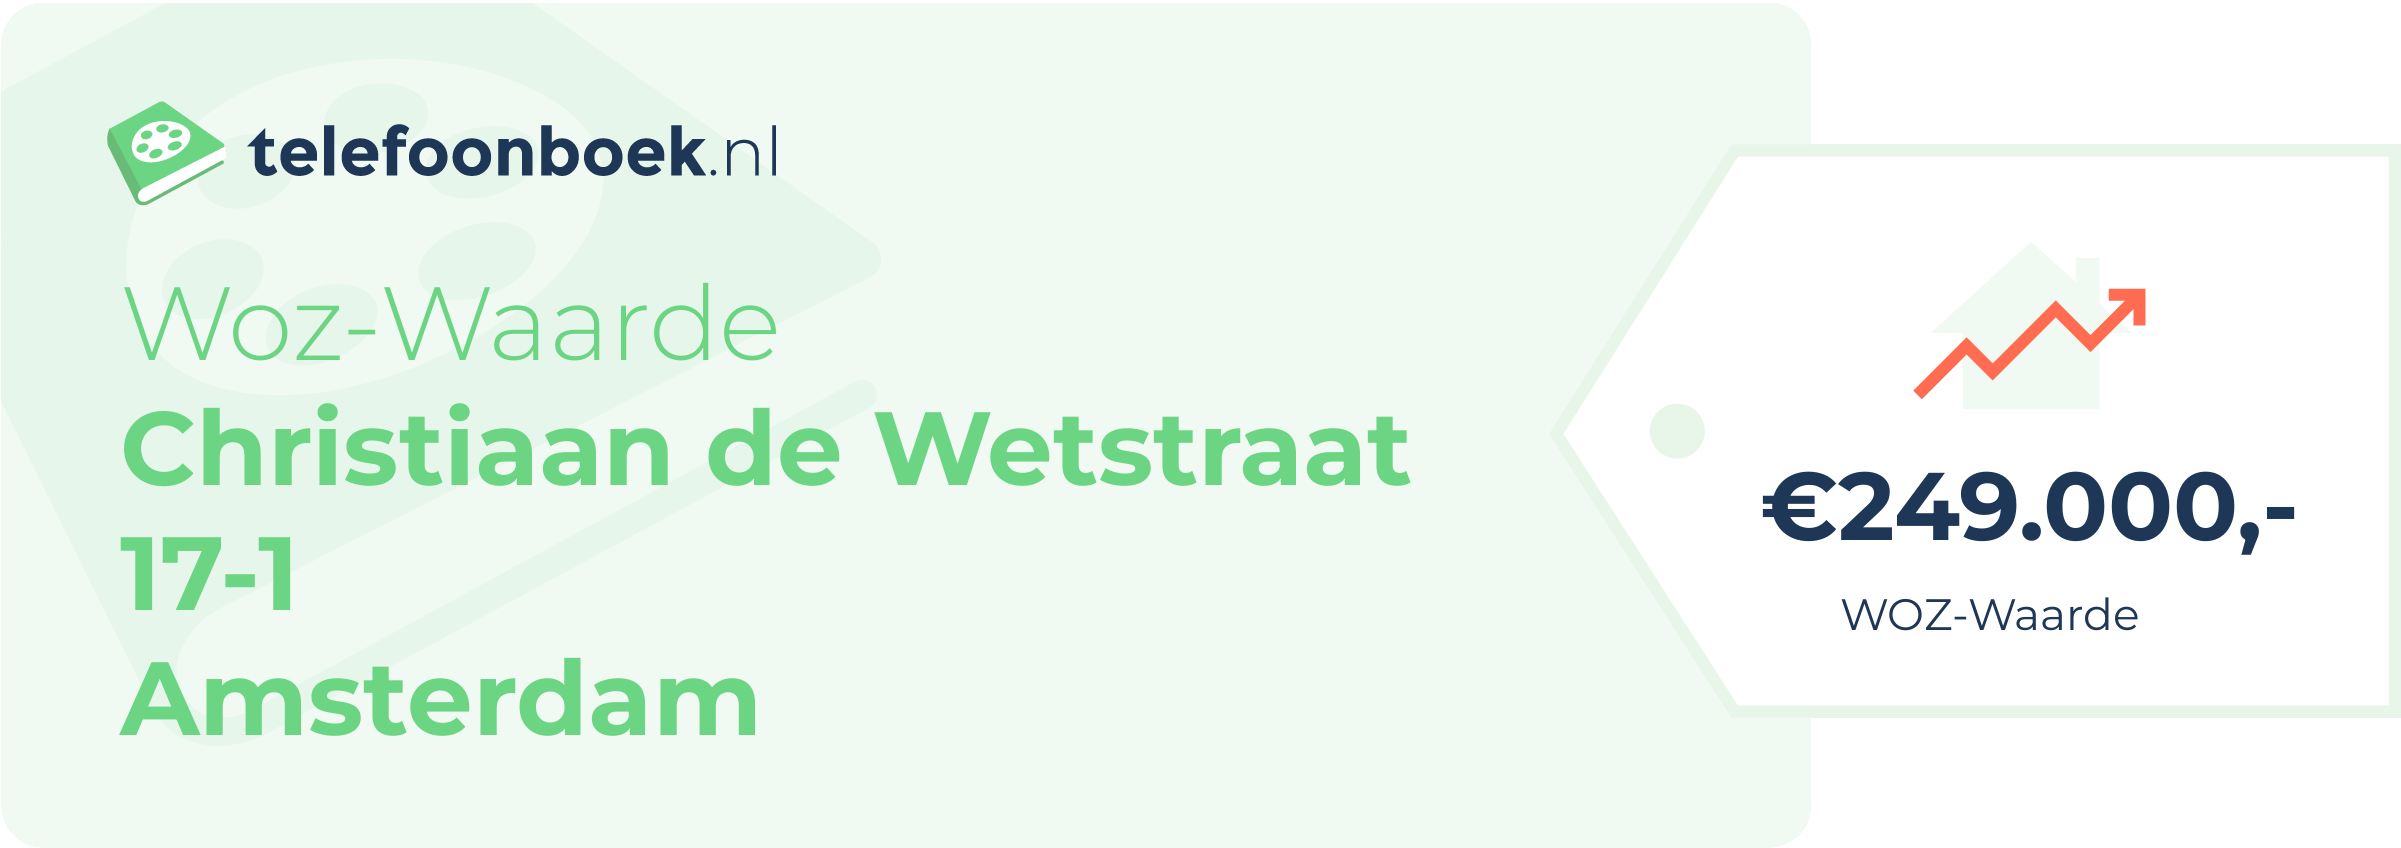 WOZ-waarde Christiaan De Wetstraat 17-1 Amsterdam